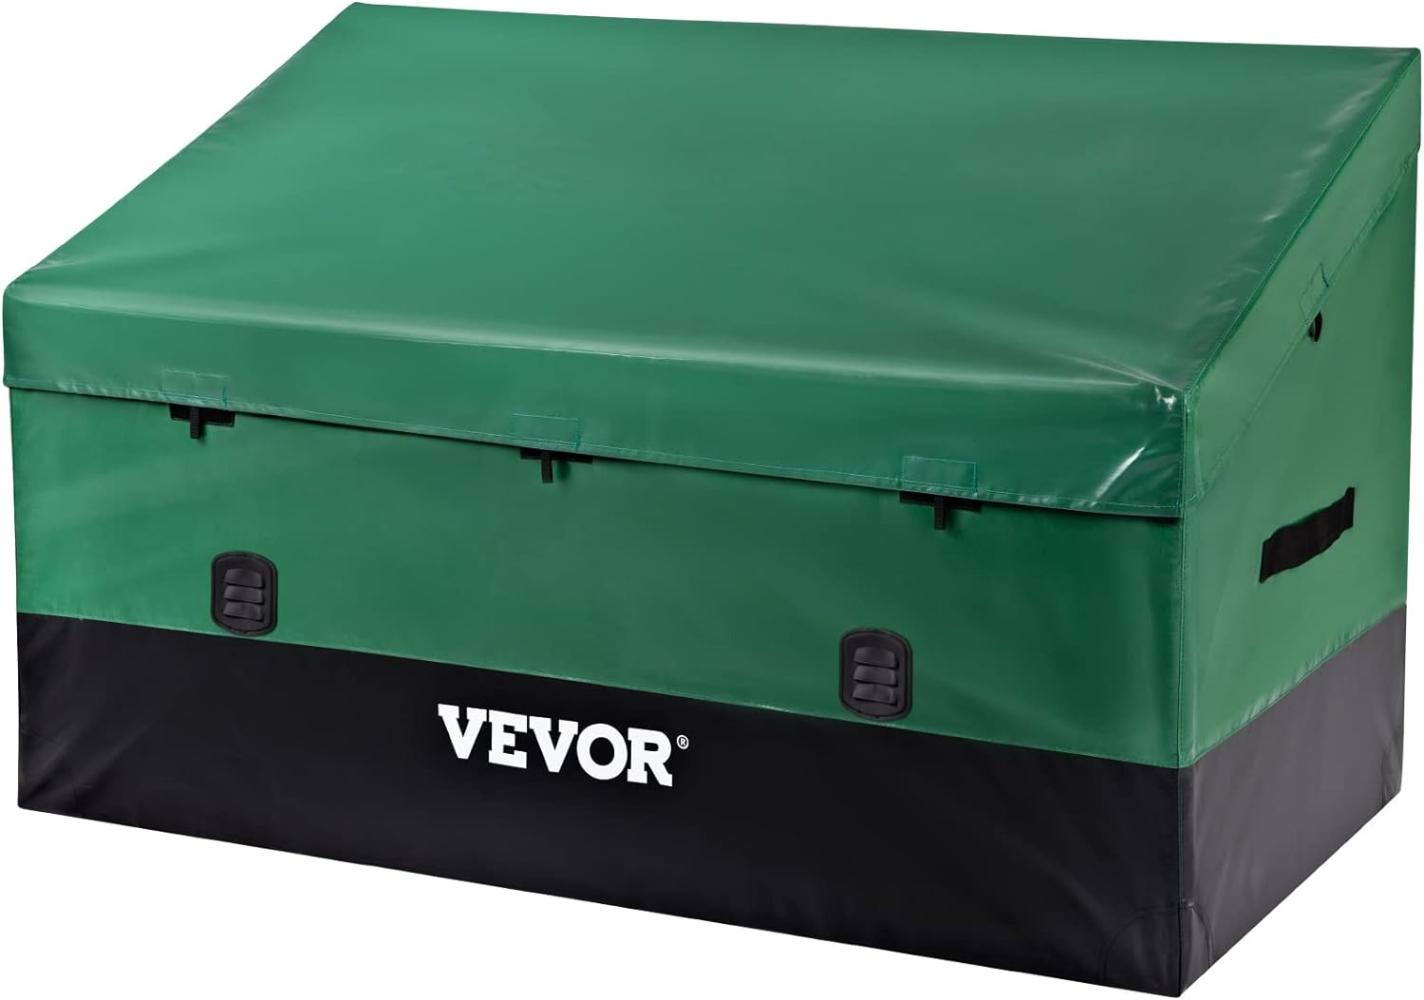 VEVOR 660L Auflagenbox Außenbereich 155x63x75cm Gartenbox aus PE-Plane auf industriellem Niveau Wasserdicht Luftdurchlässig Aufbewahrungsbox Truhe Gartenbox, Grün & Schwarz Bild 1